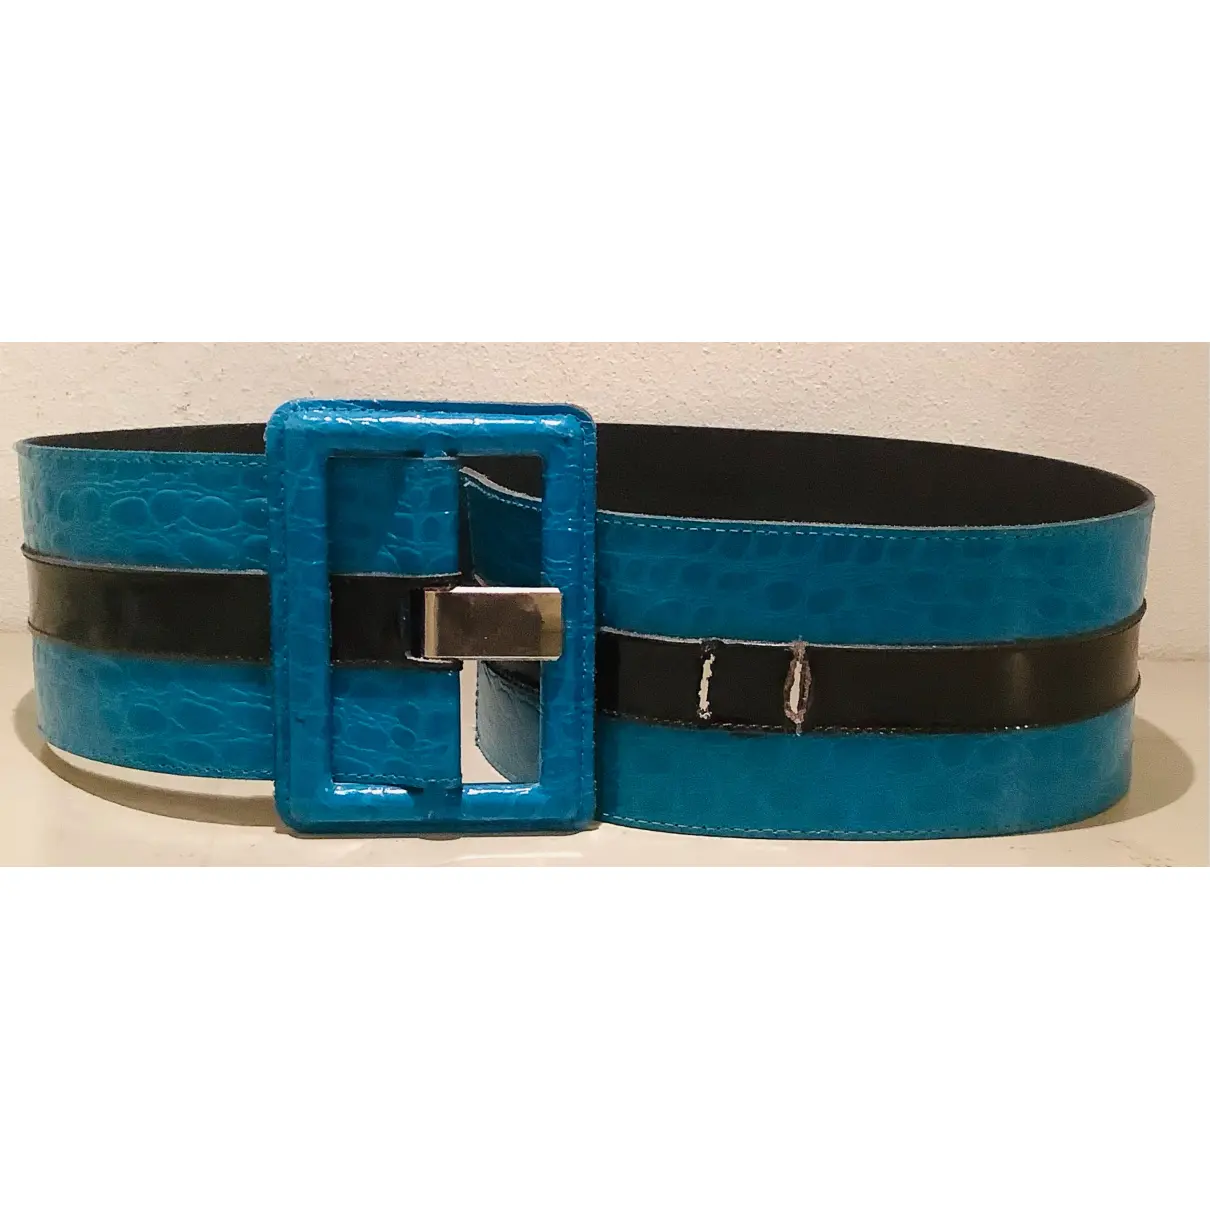 Patent leather belt Yves Saint Laurent - Vintage